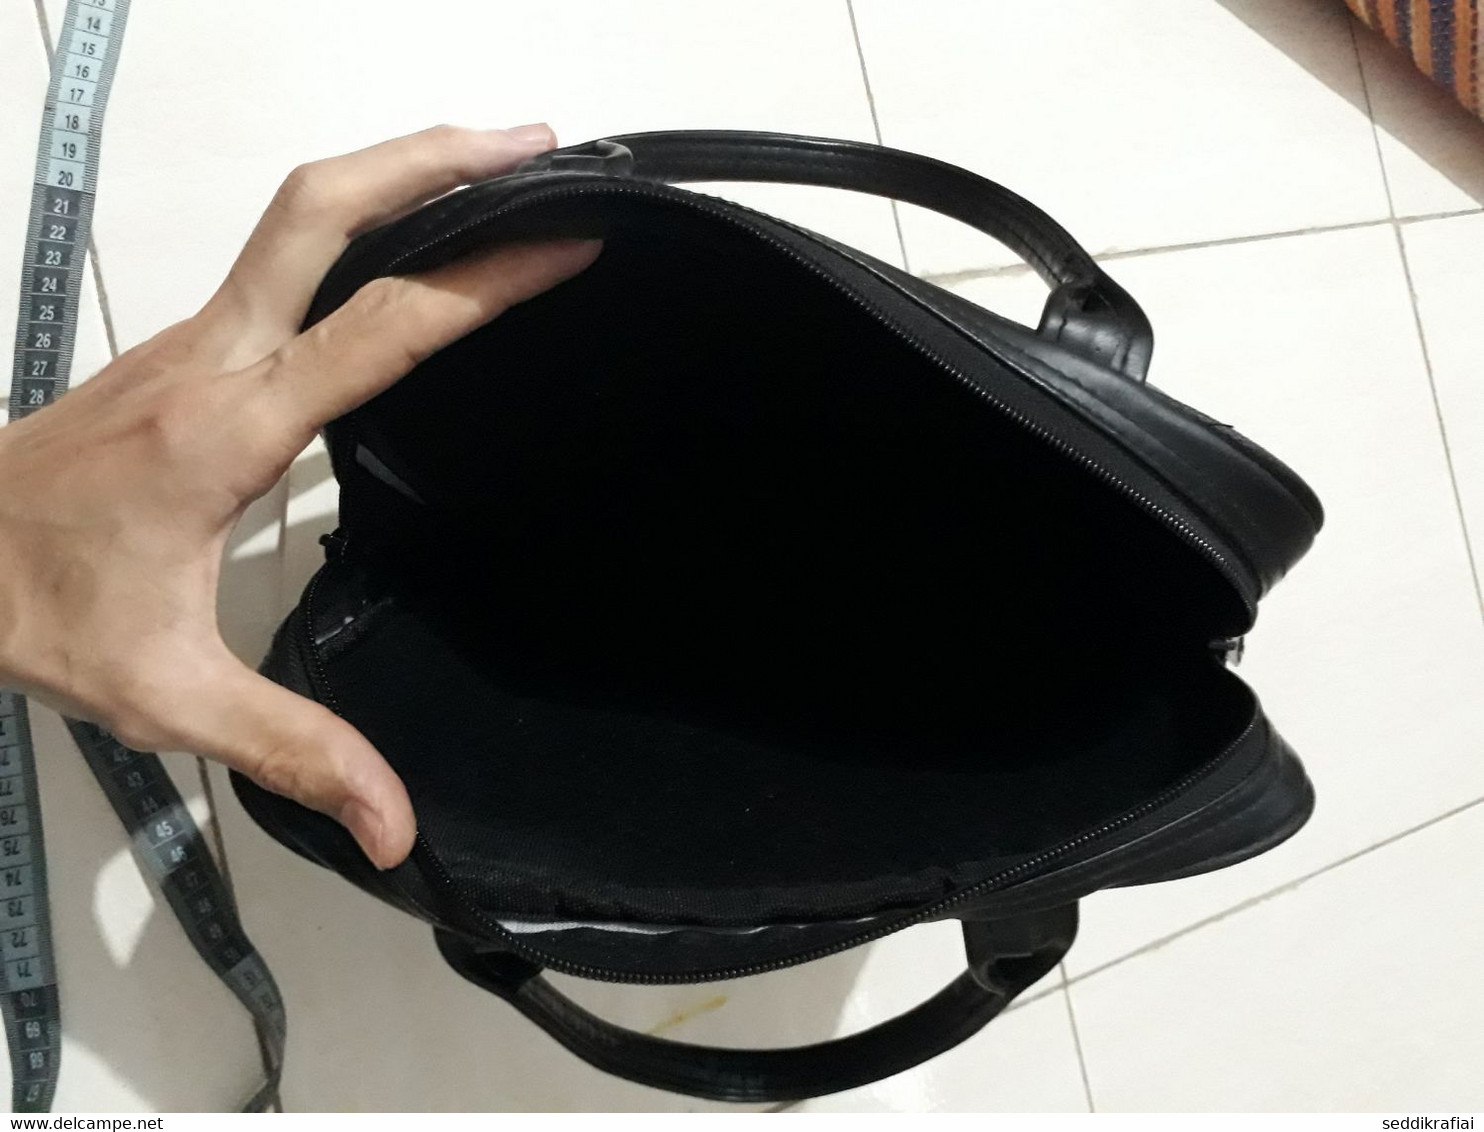 Leather Bag Messenger Laptop Tablet Padded Carrying Case Travel Brand Superskunk